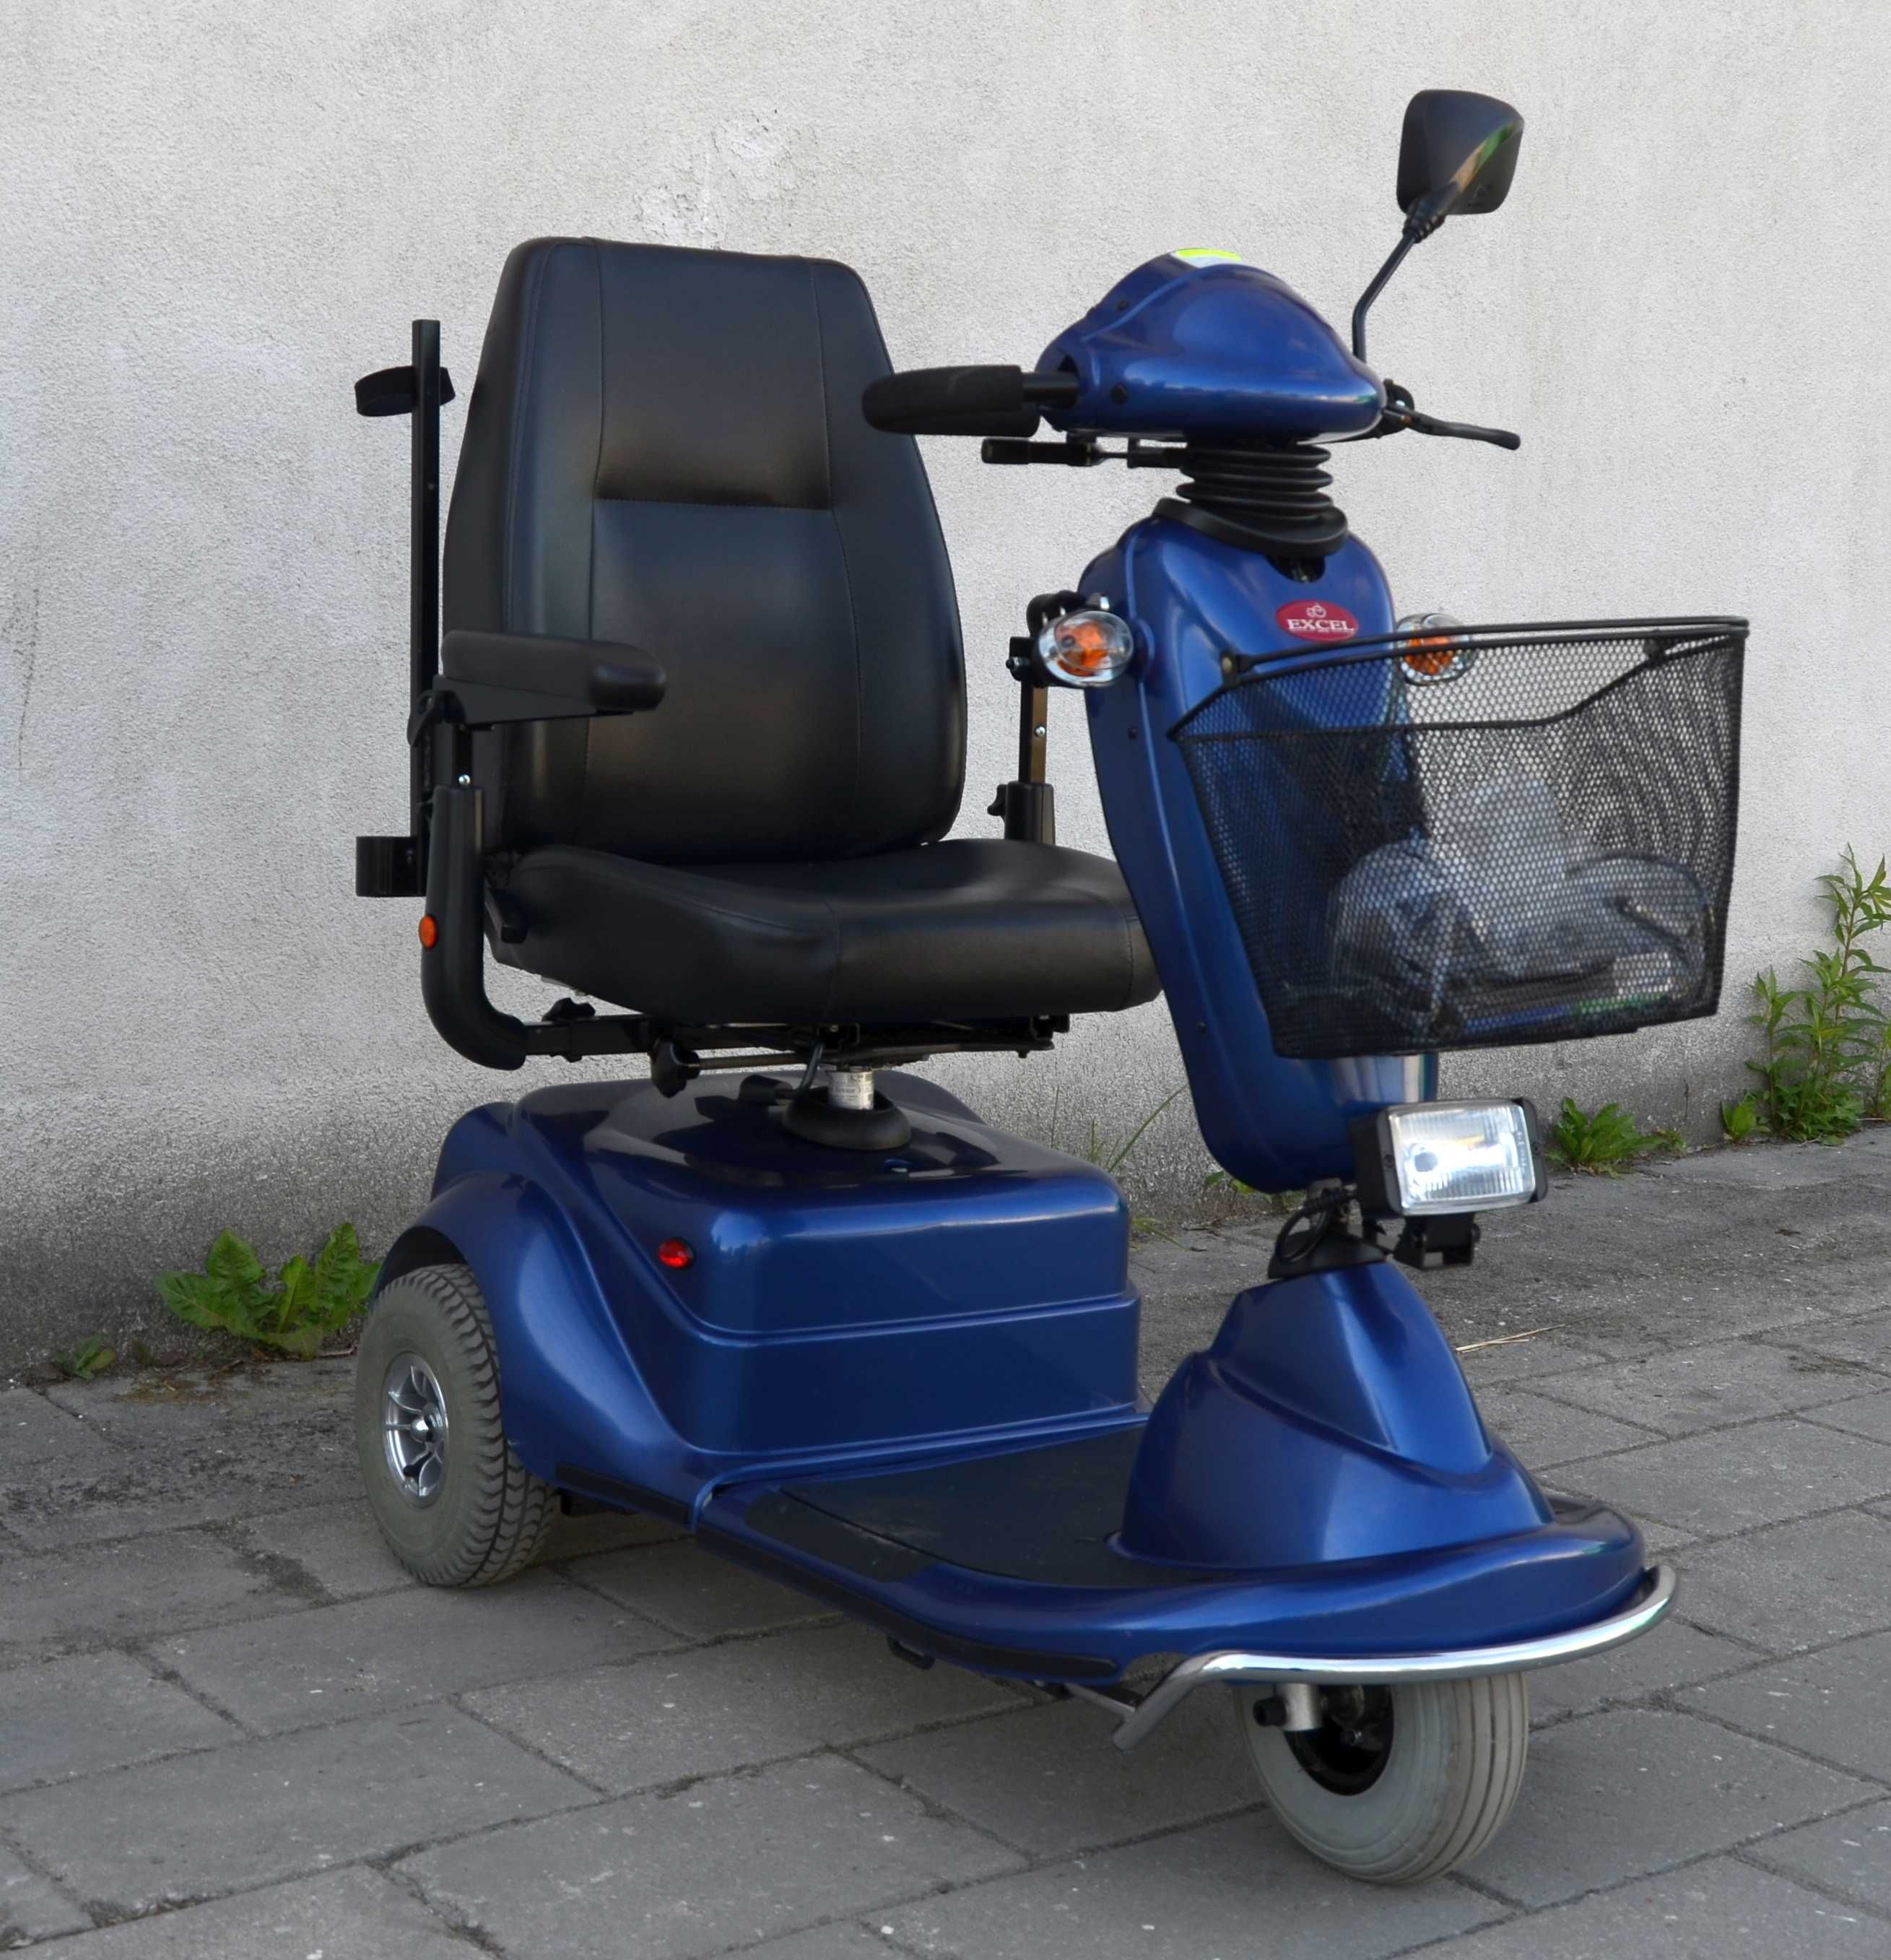 Elektryczny wózek inwalidzki skuter trójkołowy EXEL GALAXY navigator